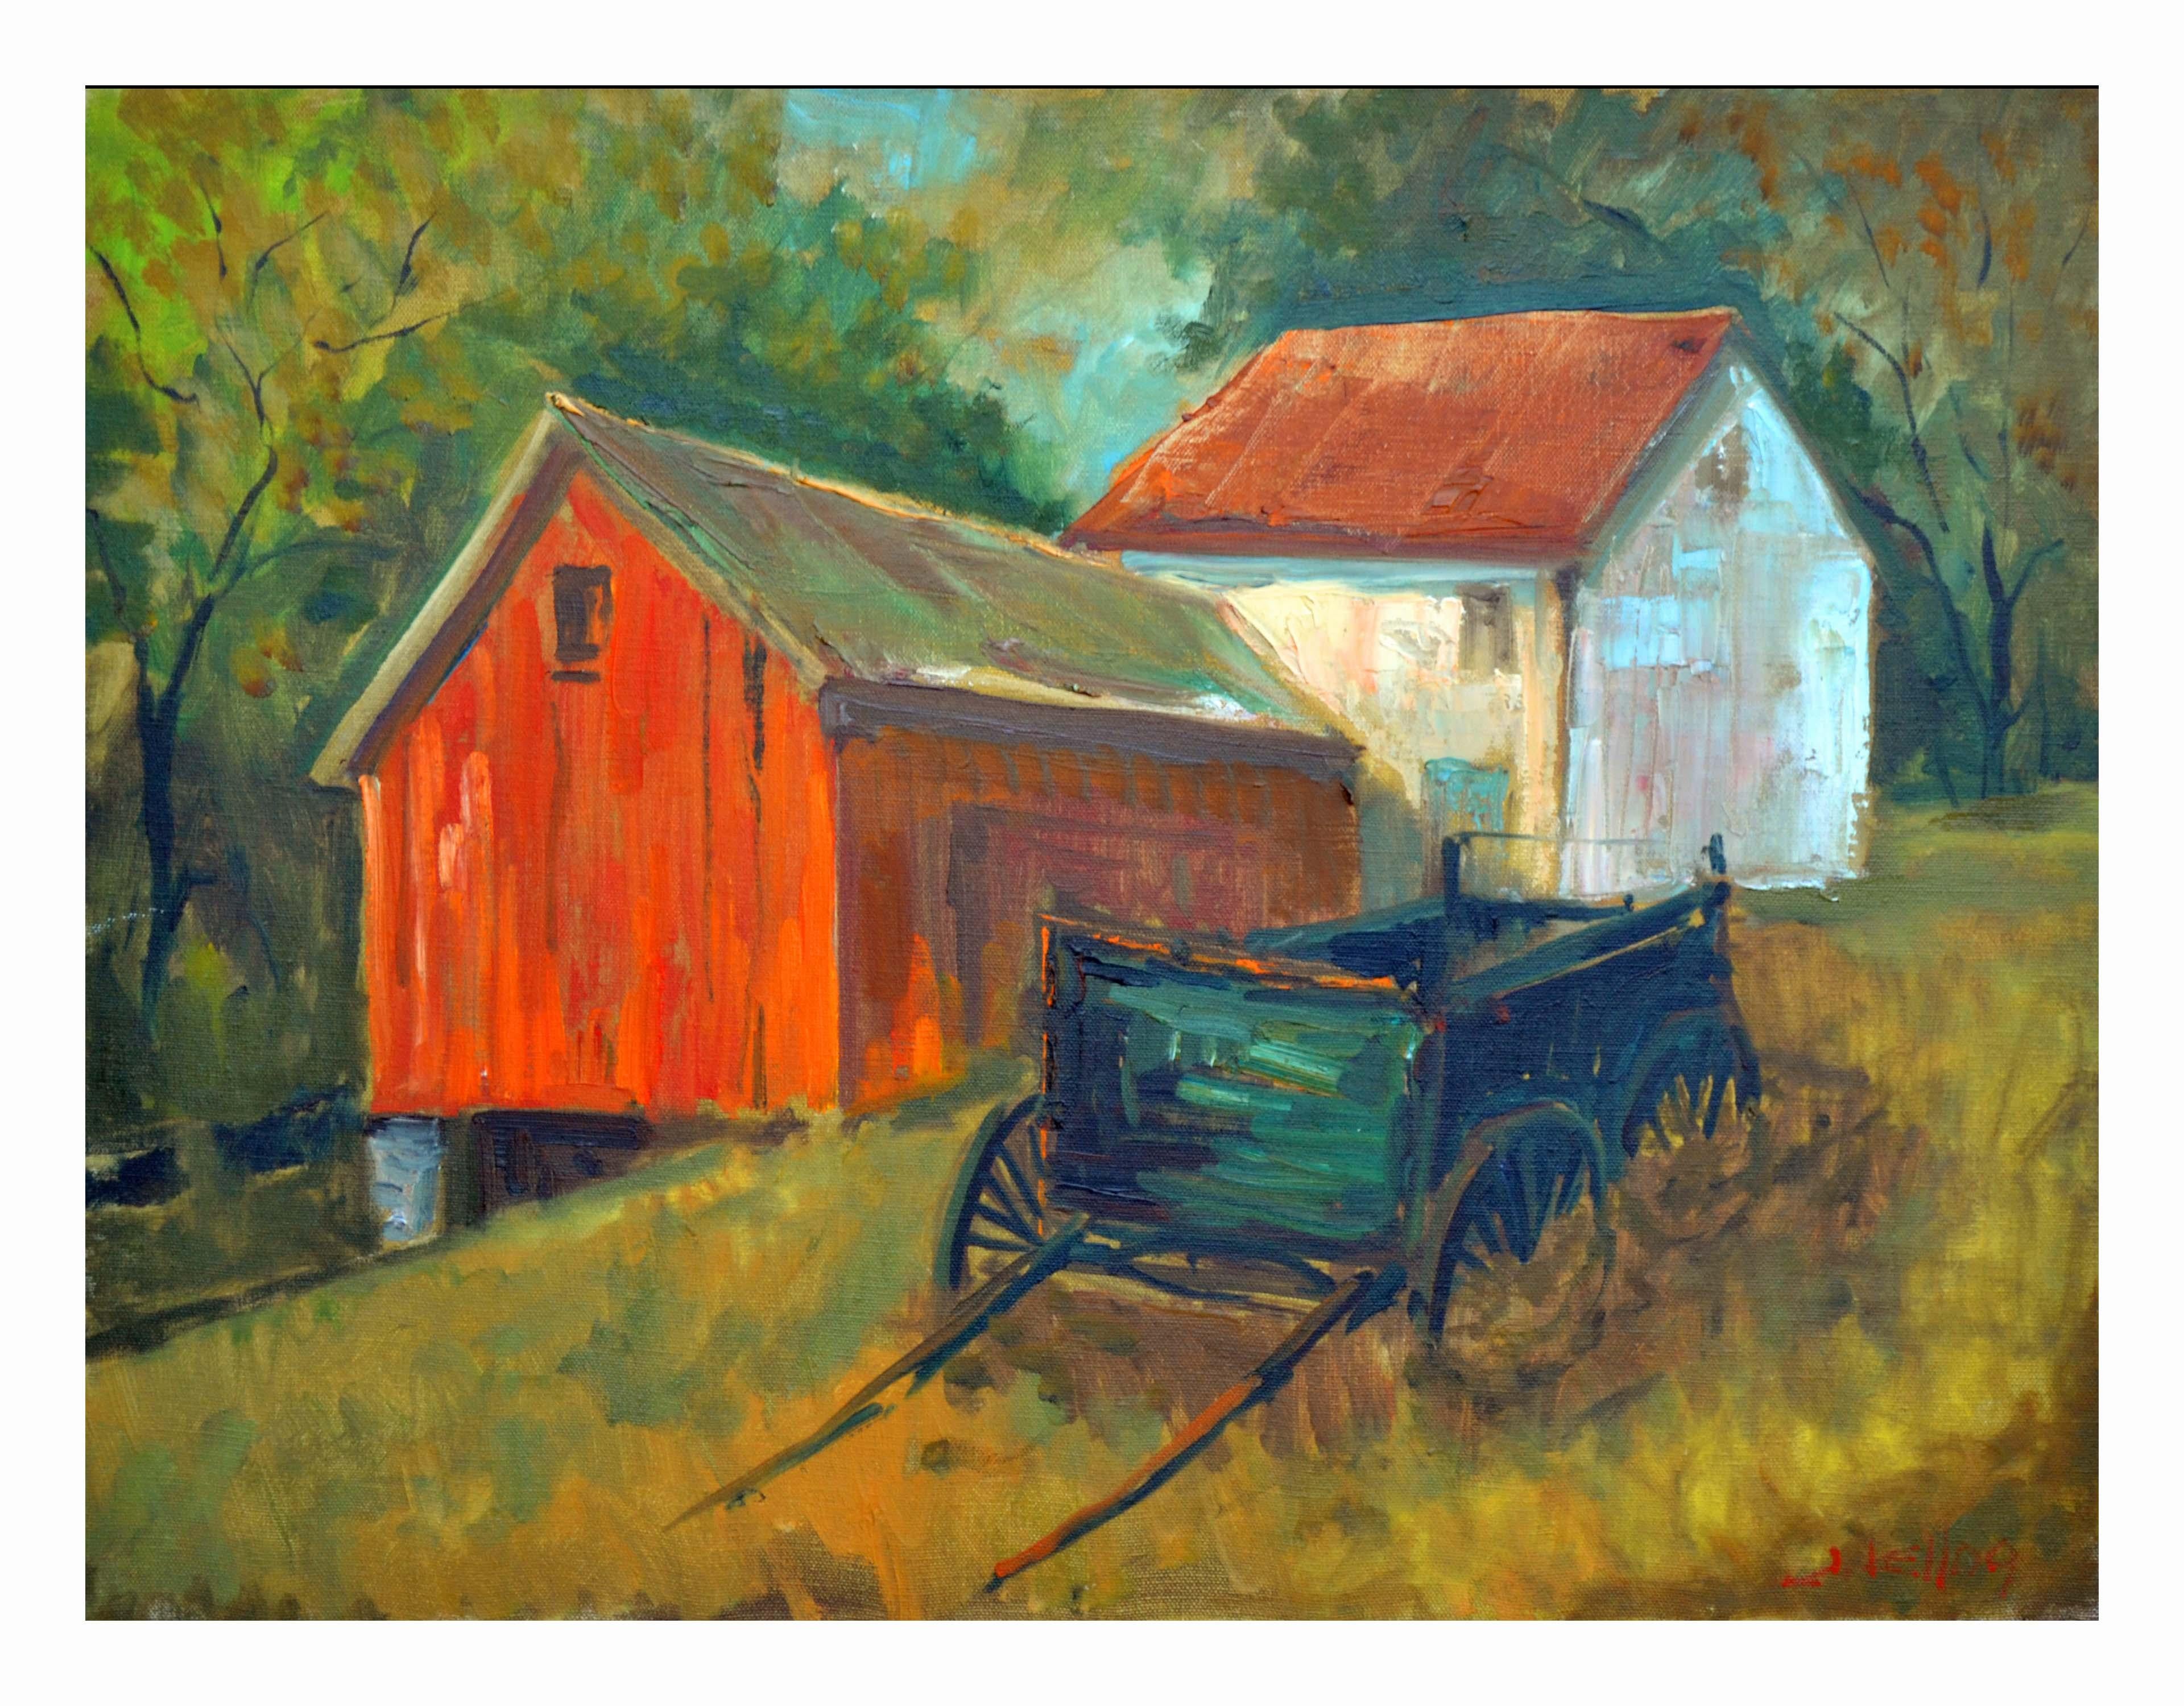 Landscape Painting J. Kellog - "Gold Country Homestead", Paysage de ferme californien avec grange et wagon rouge